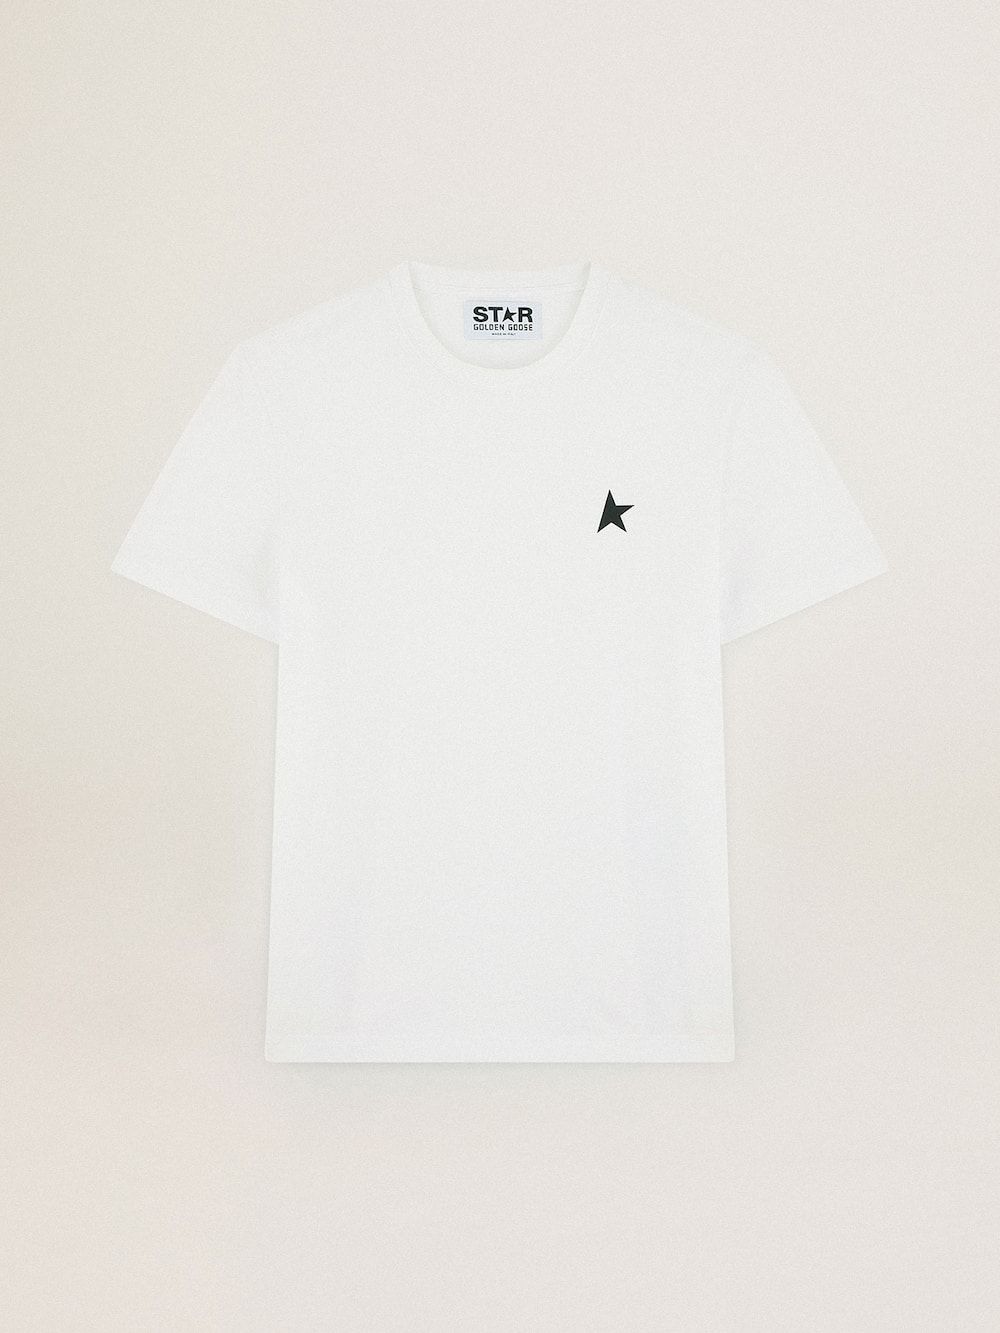 Golden Goose - Camiseta blanca de la colección Star con estrella verde en contraste en el delantero in 